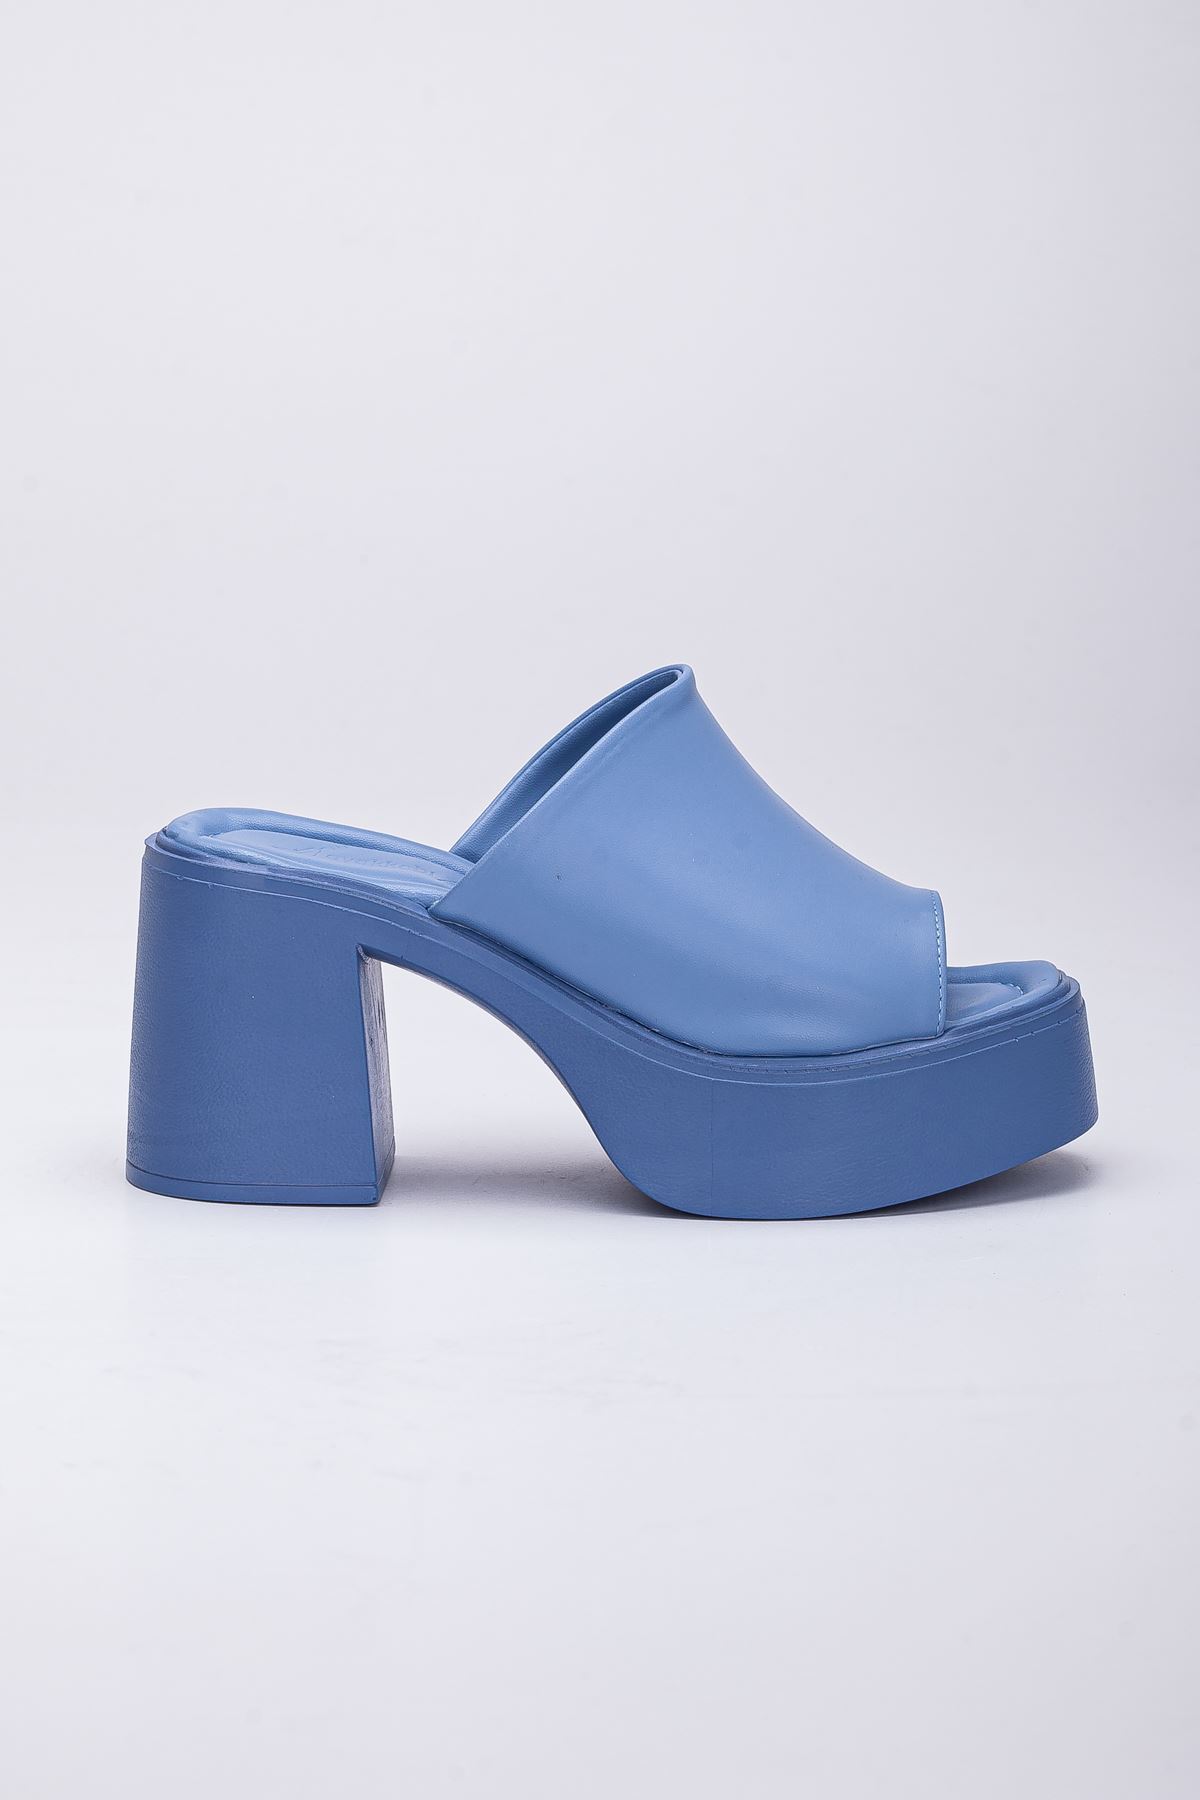 Jayla Kadın Topuklu Platform Terlik Bebe Mavisi